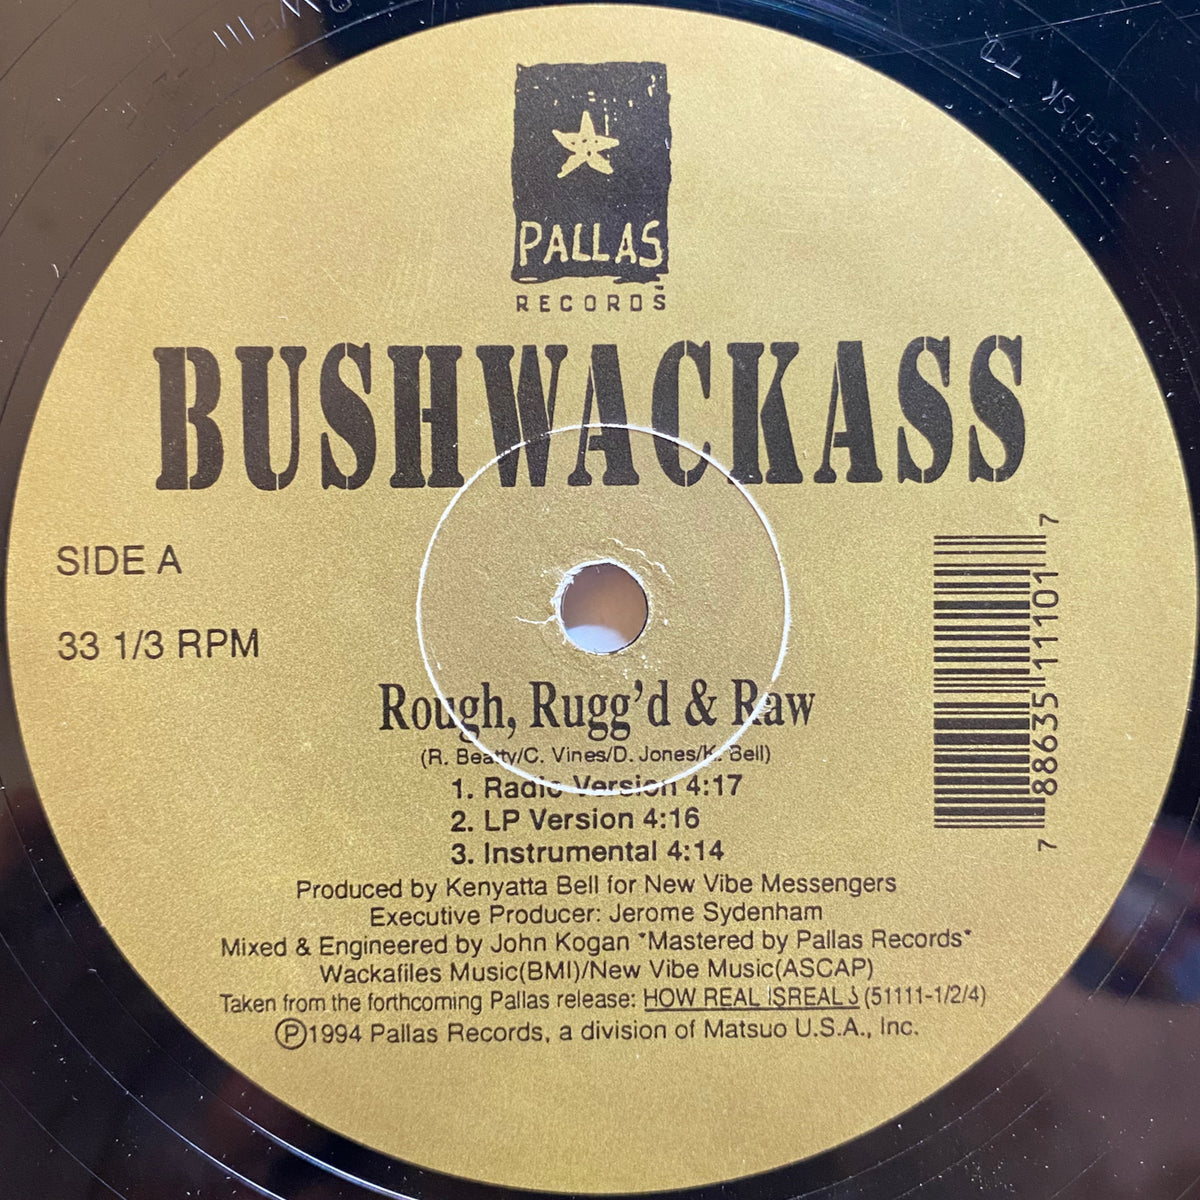 Bushwackass